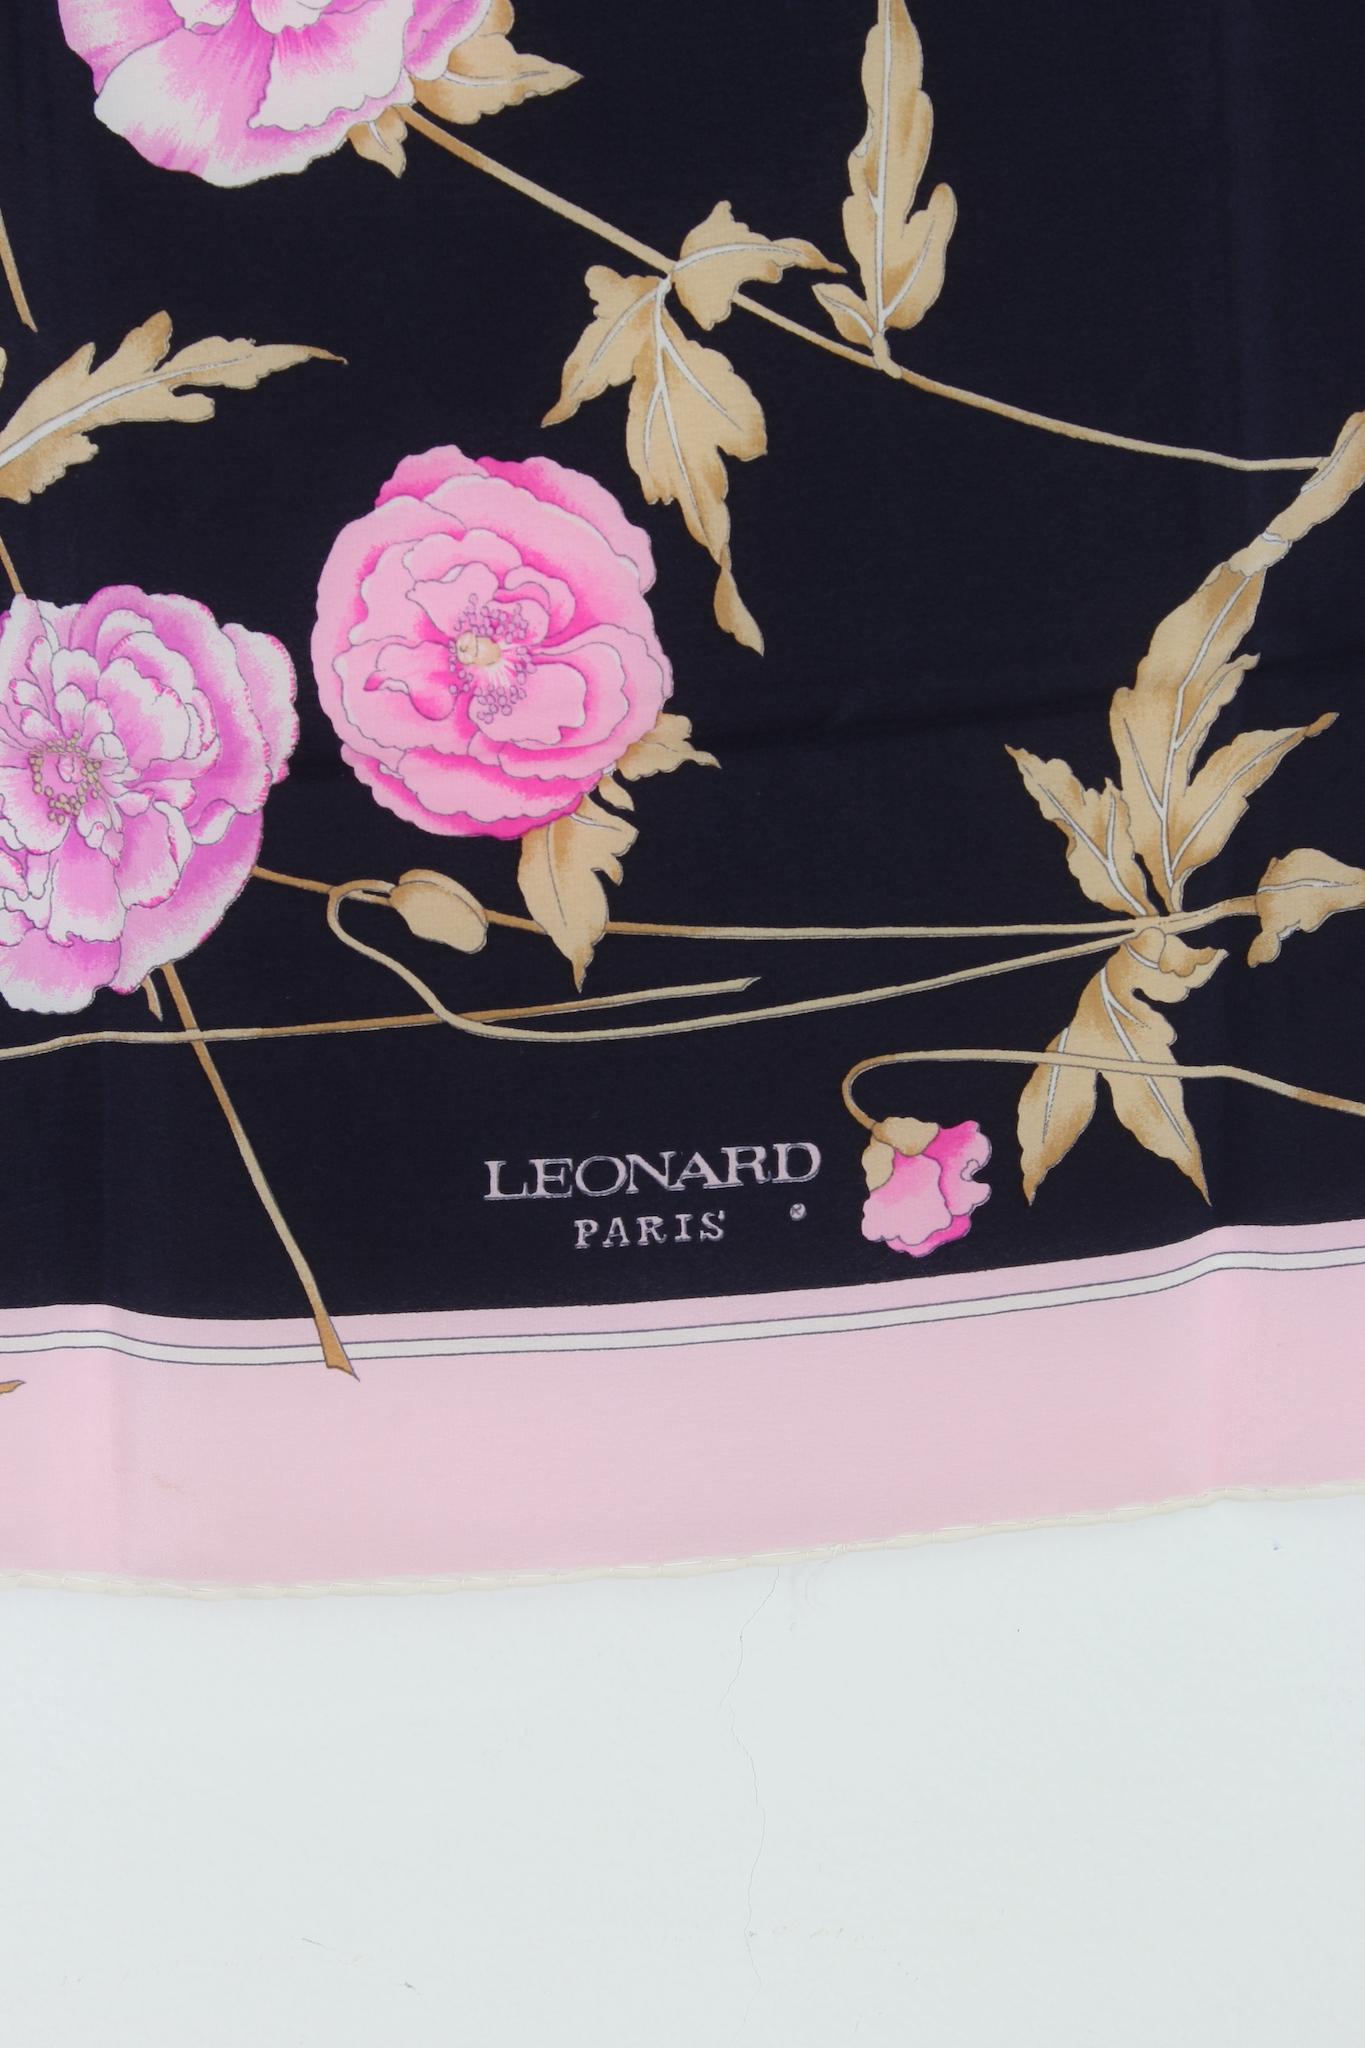 Foulard Leonard Paris vintage des années 80. Fond noir avec motifs floraux roses et violets. tissu 100 % soie.

Dimensions : 90 x 90 cm